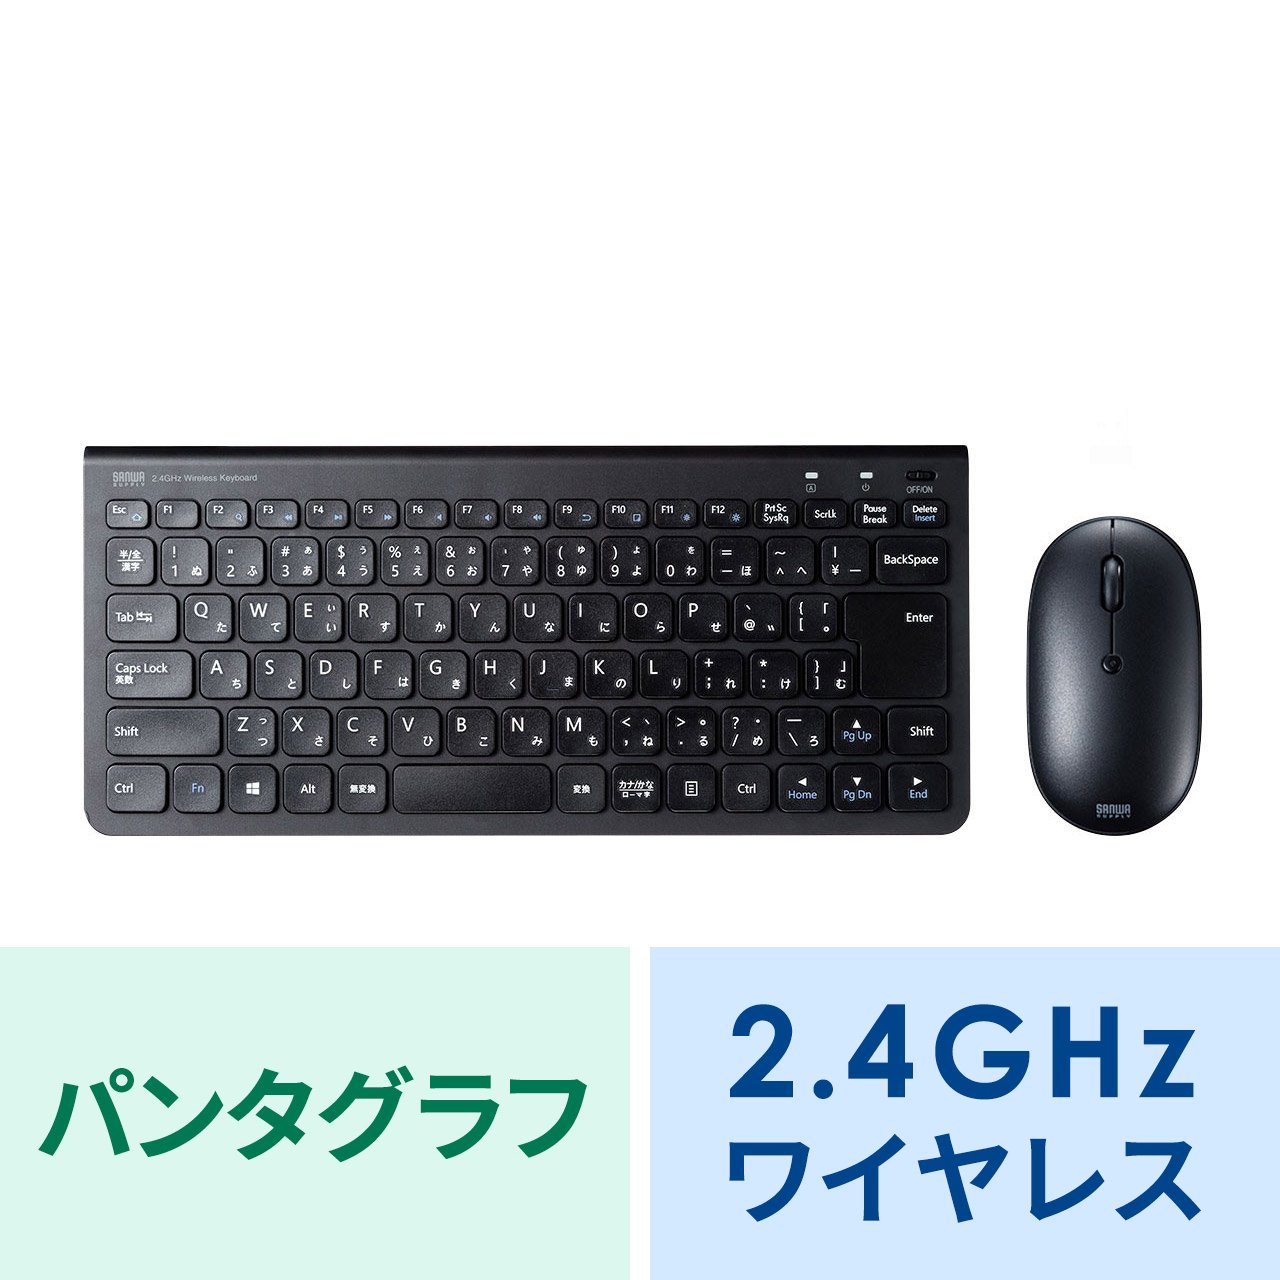 2.4GHz ワイヤレスキーボード テンキーなし パンタグラフ マウスセット 充電式 日本語配列(JIS) ブラック  SKB-WL32SETBKの販売商品 |通販ならサンワダイレクト